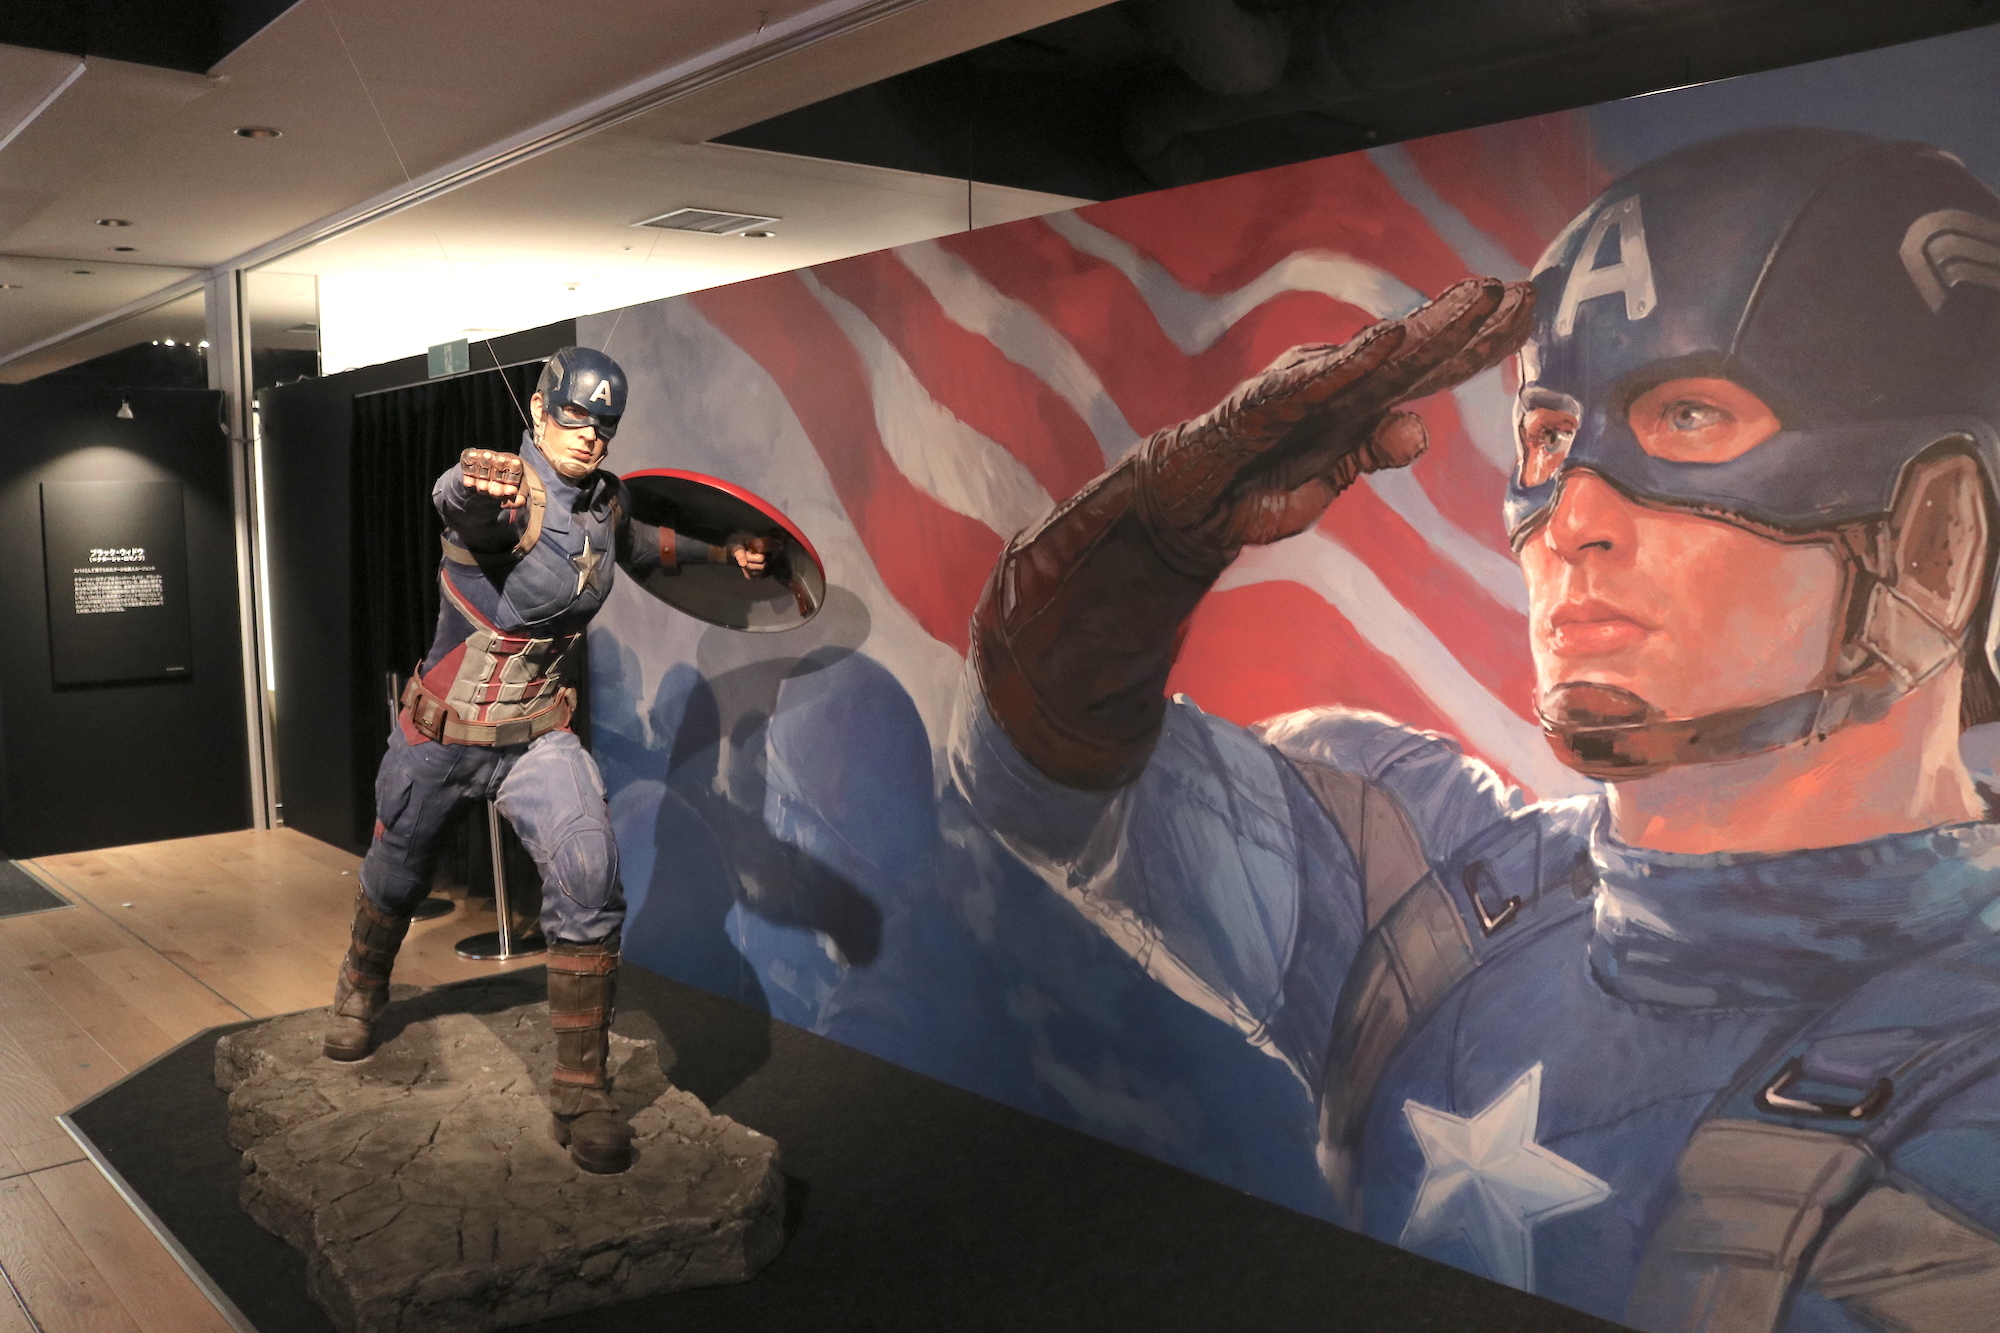 アイアンマンやキャプテン アメリカたちの世界観が体感できるイベント マーベル スタジオ ヒーローたちの世界へ が日本初上陸 Spice エンタメ特化型情報メディア スパイス